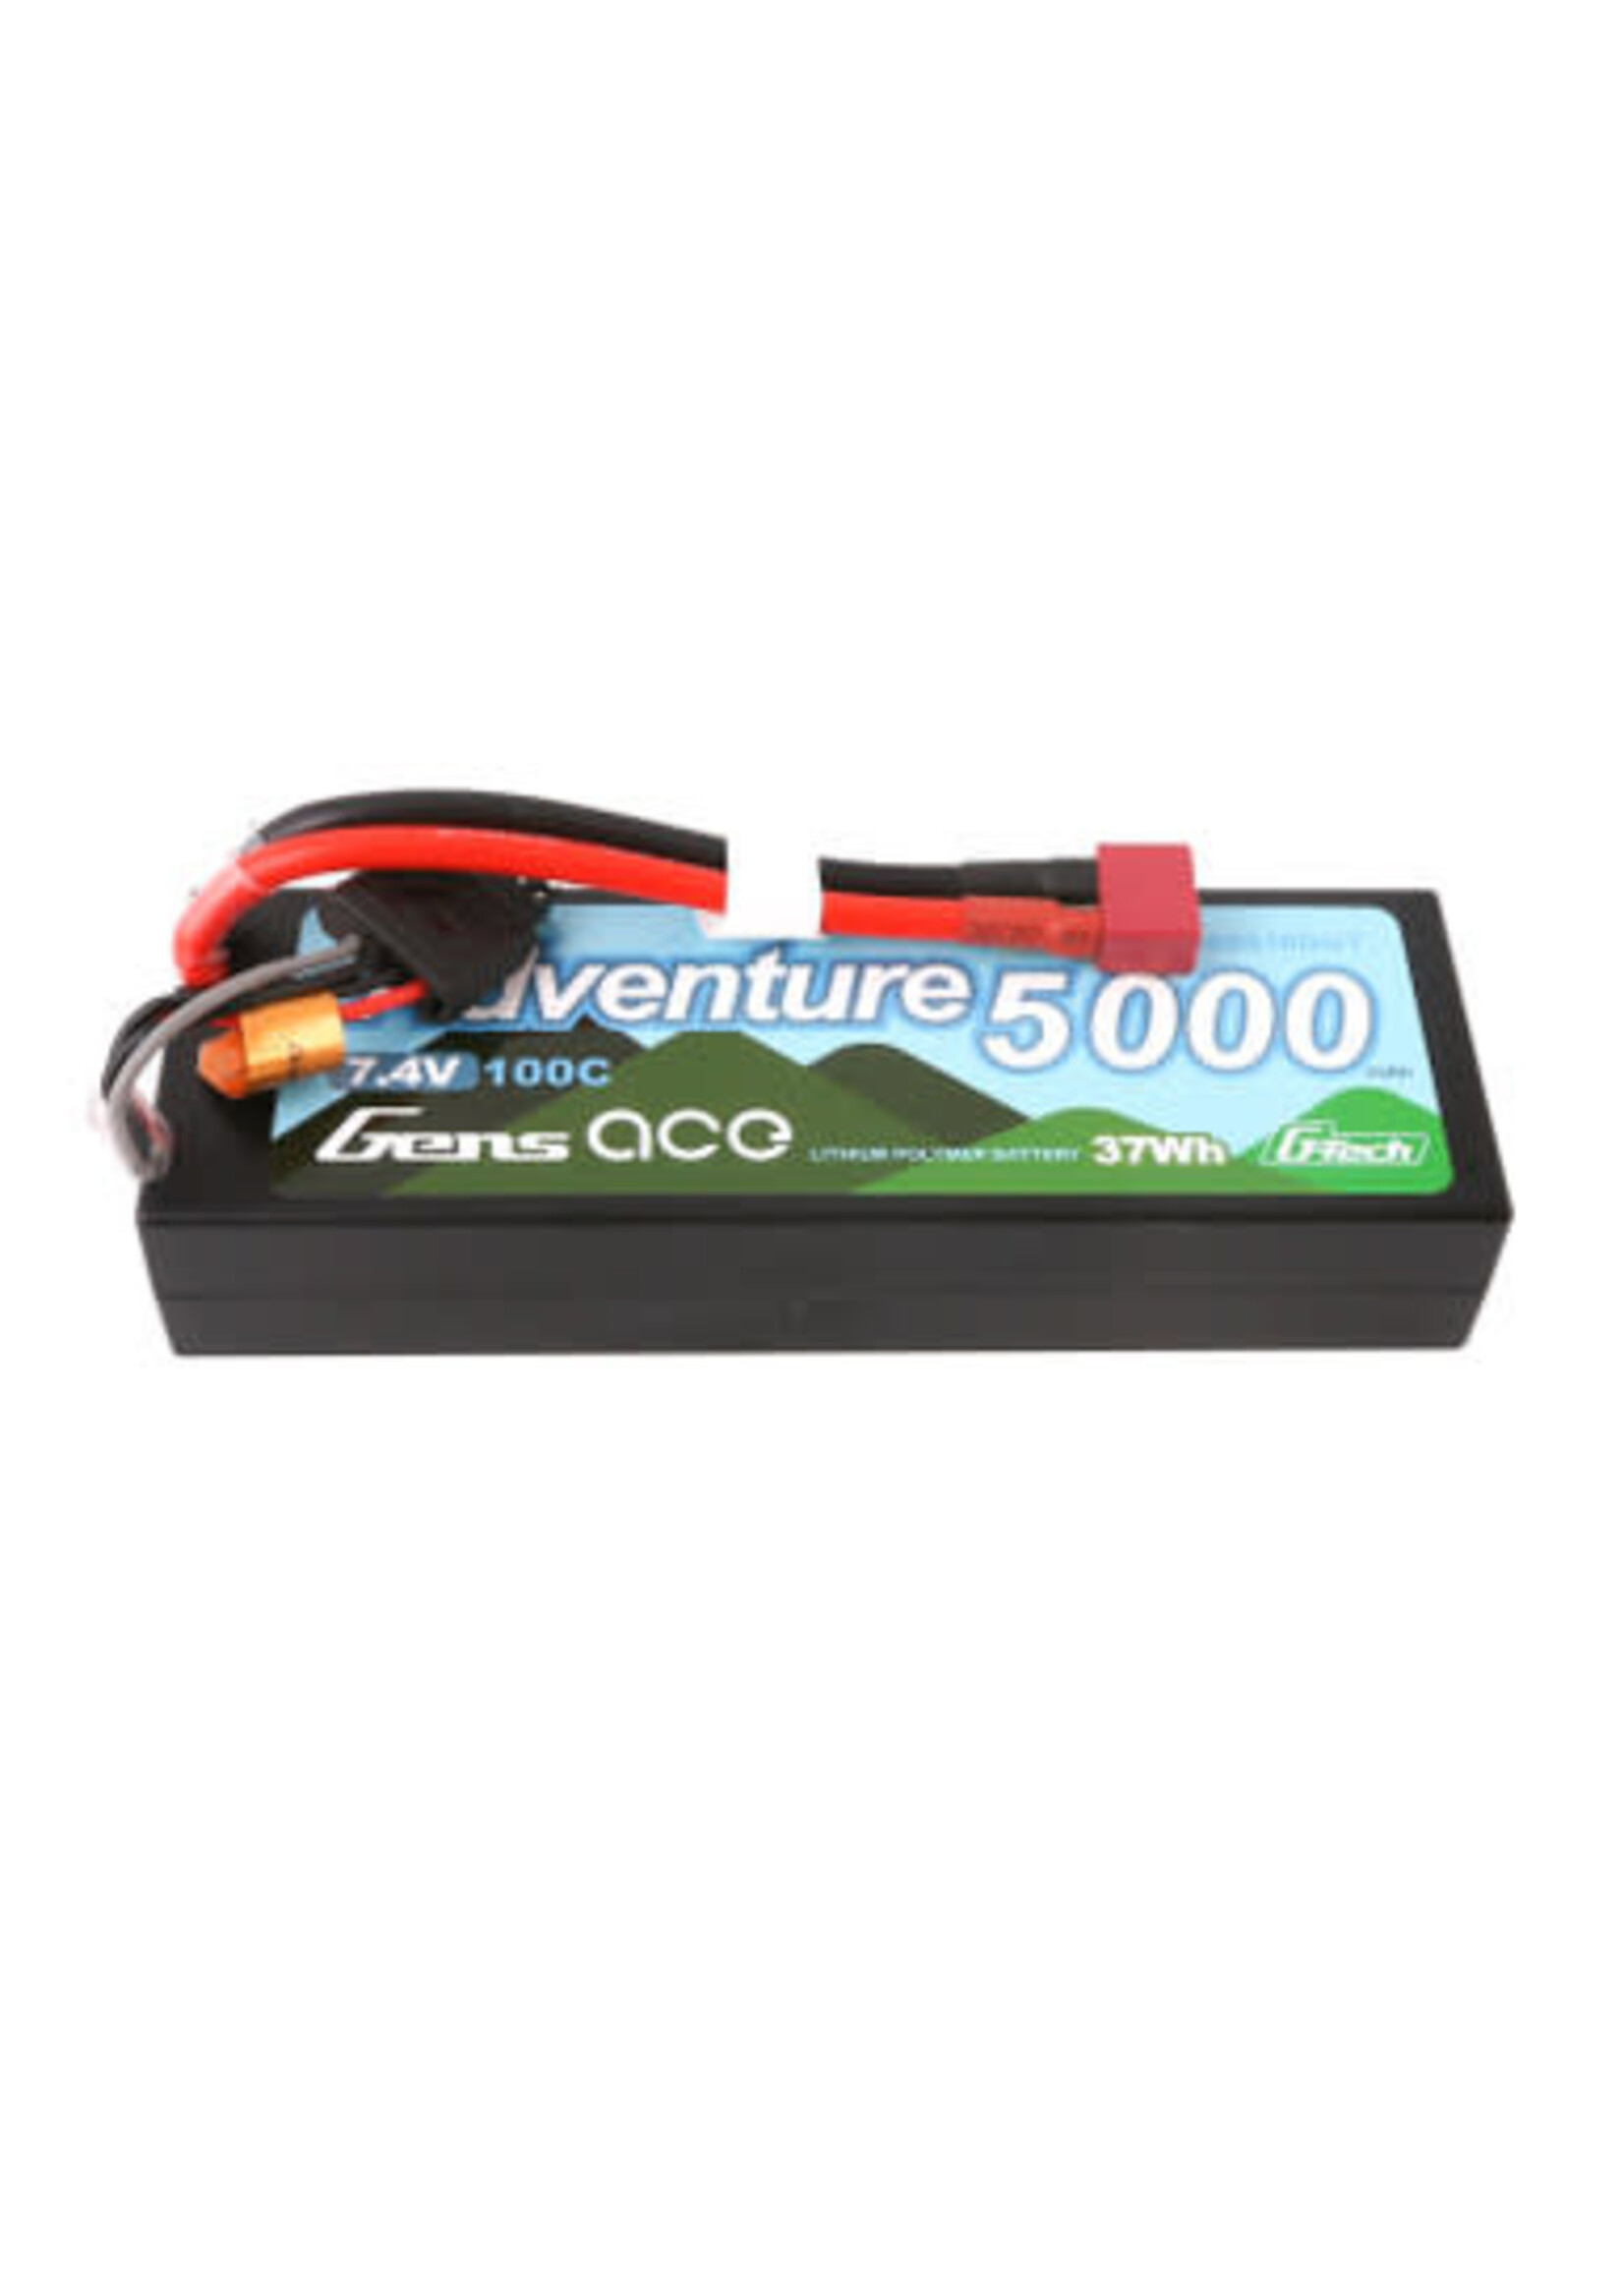 Gens ace GEA502S10DGT Gens Ace G-Tech Adventure 5000mAh 7.4V 2S1P 100C HardCase Lipo Battery Pack 24# With Deans Plug